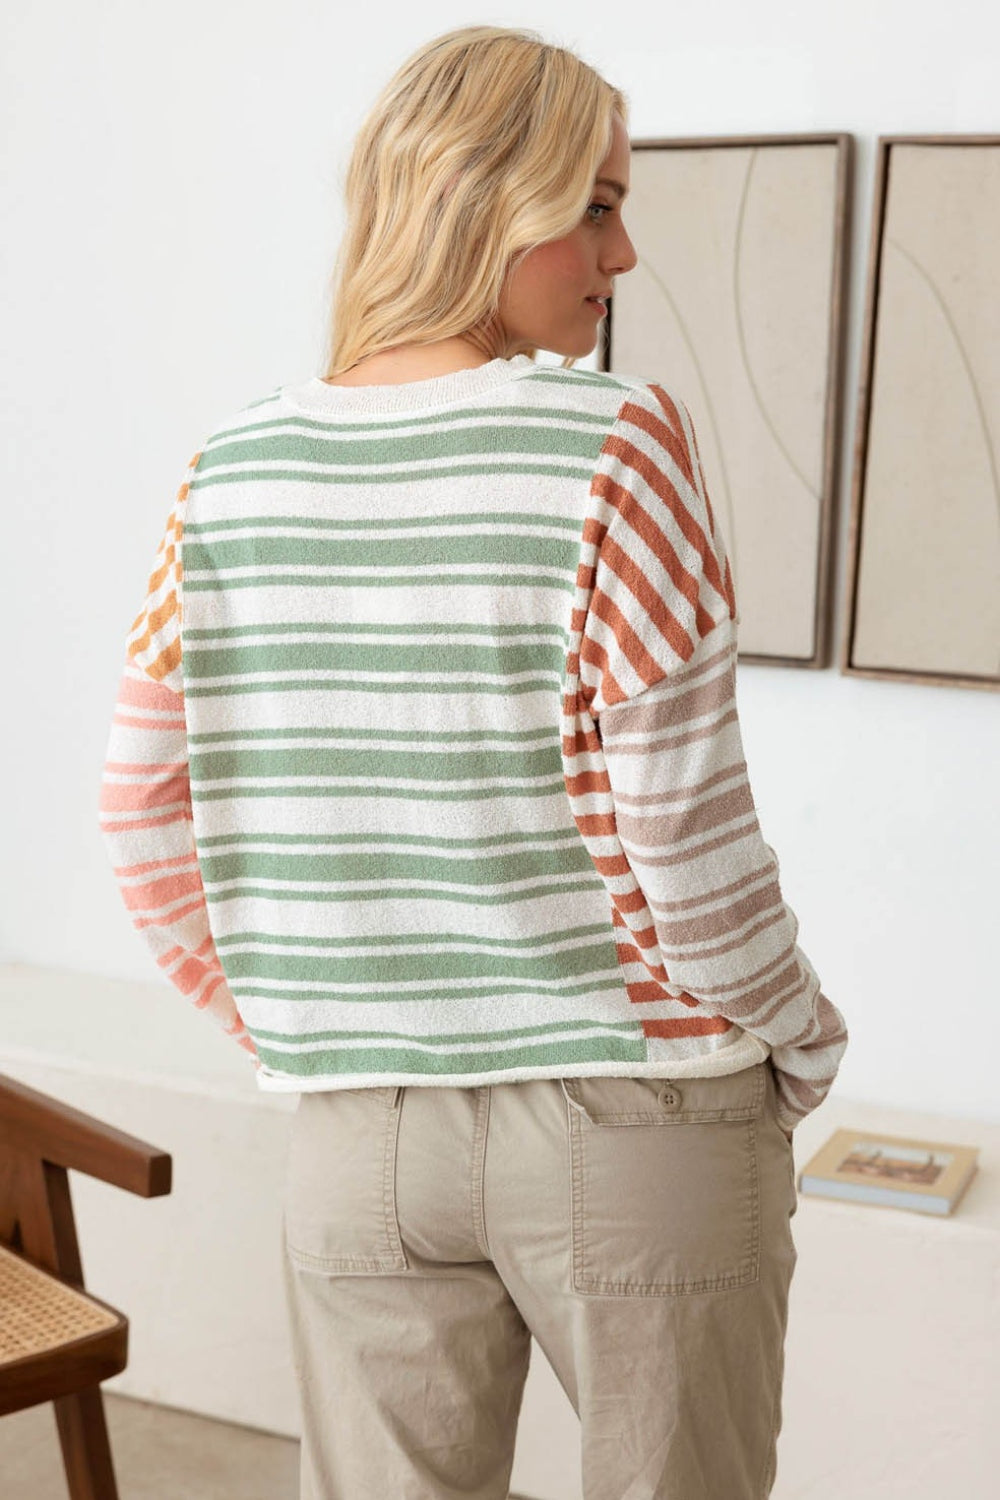 TEEK - Sage Stripe Long Sleeve Relaxed Knit Top TOPS TEEK Trend   